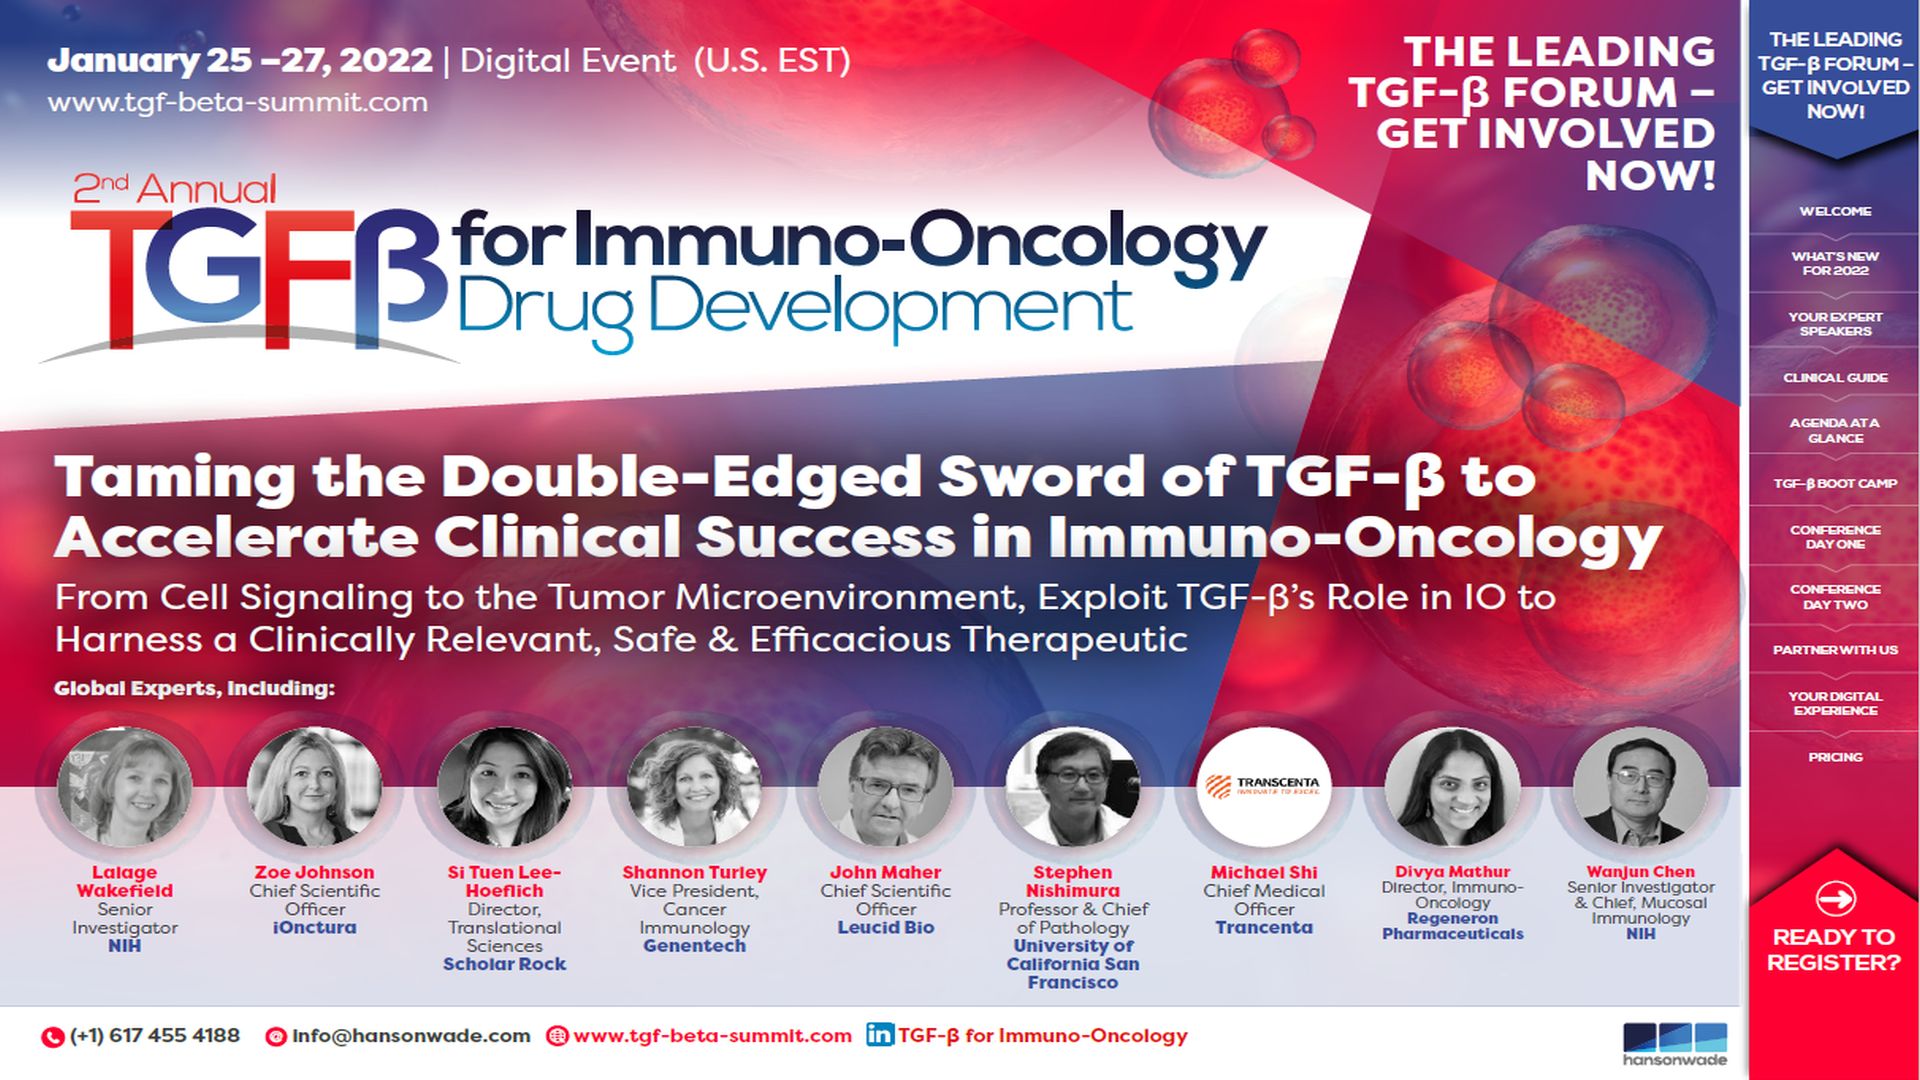 2nd TGF-β for Immuno-Oncology Drug Development Summit, Online Event